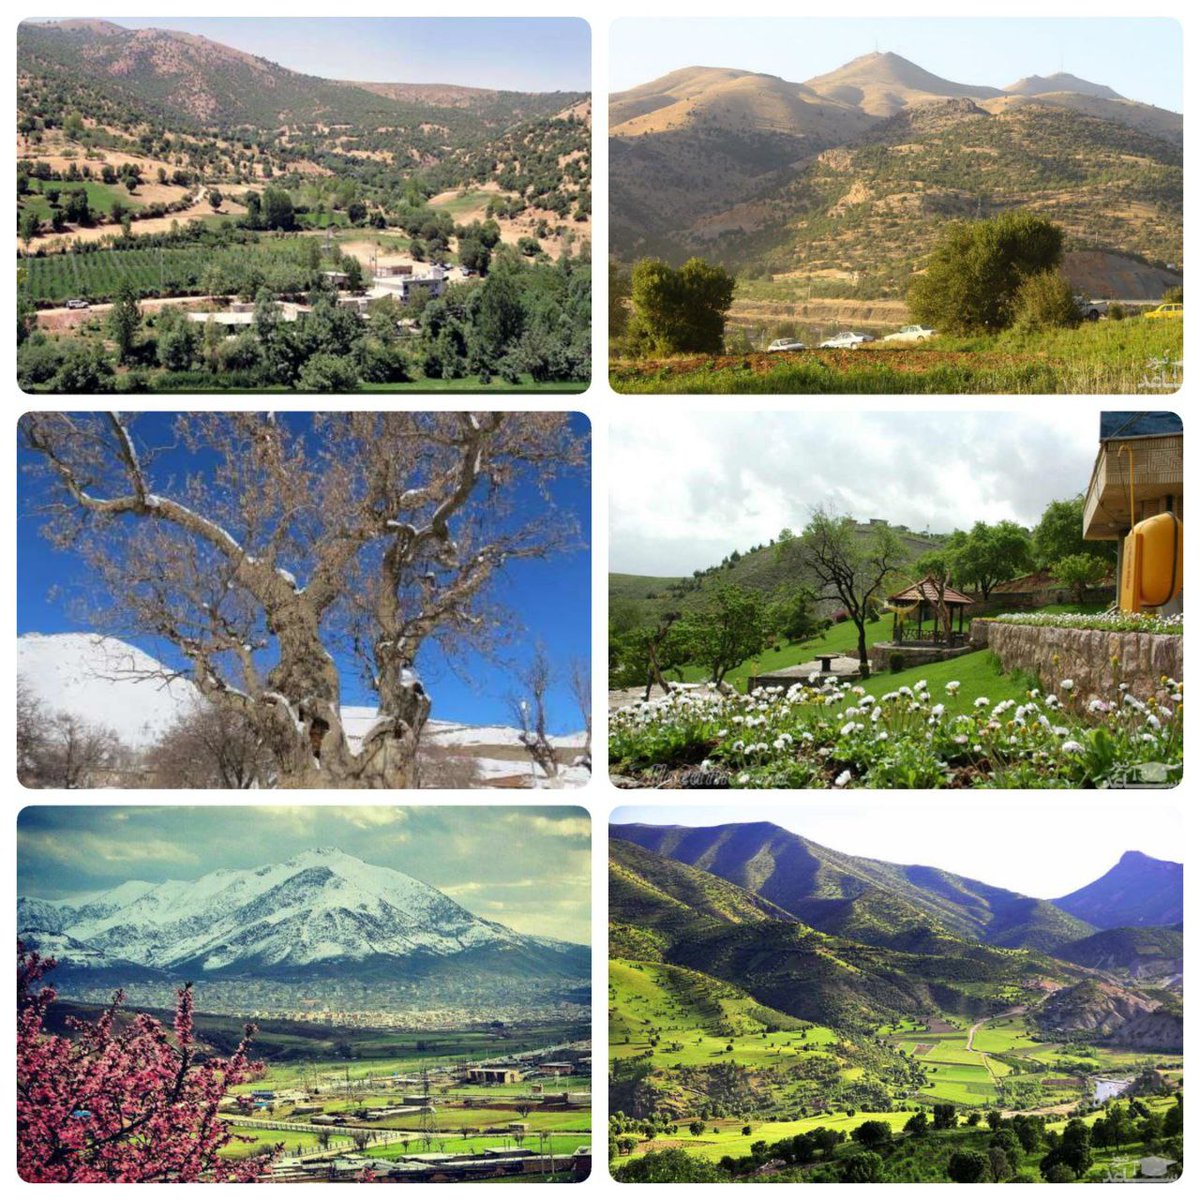 سفری به دنیای رویا در بانه
در حقیقت بانه است و هزار توی طبیعت، هزار تویی که دشت‌ها و باغ‌های چشم نوازی برای سفر دارد که همه را محو جاهای ناب و بکر خود می‌کند.
#شاری_آربابا
#کردستان_زیبا